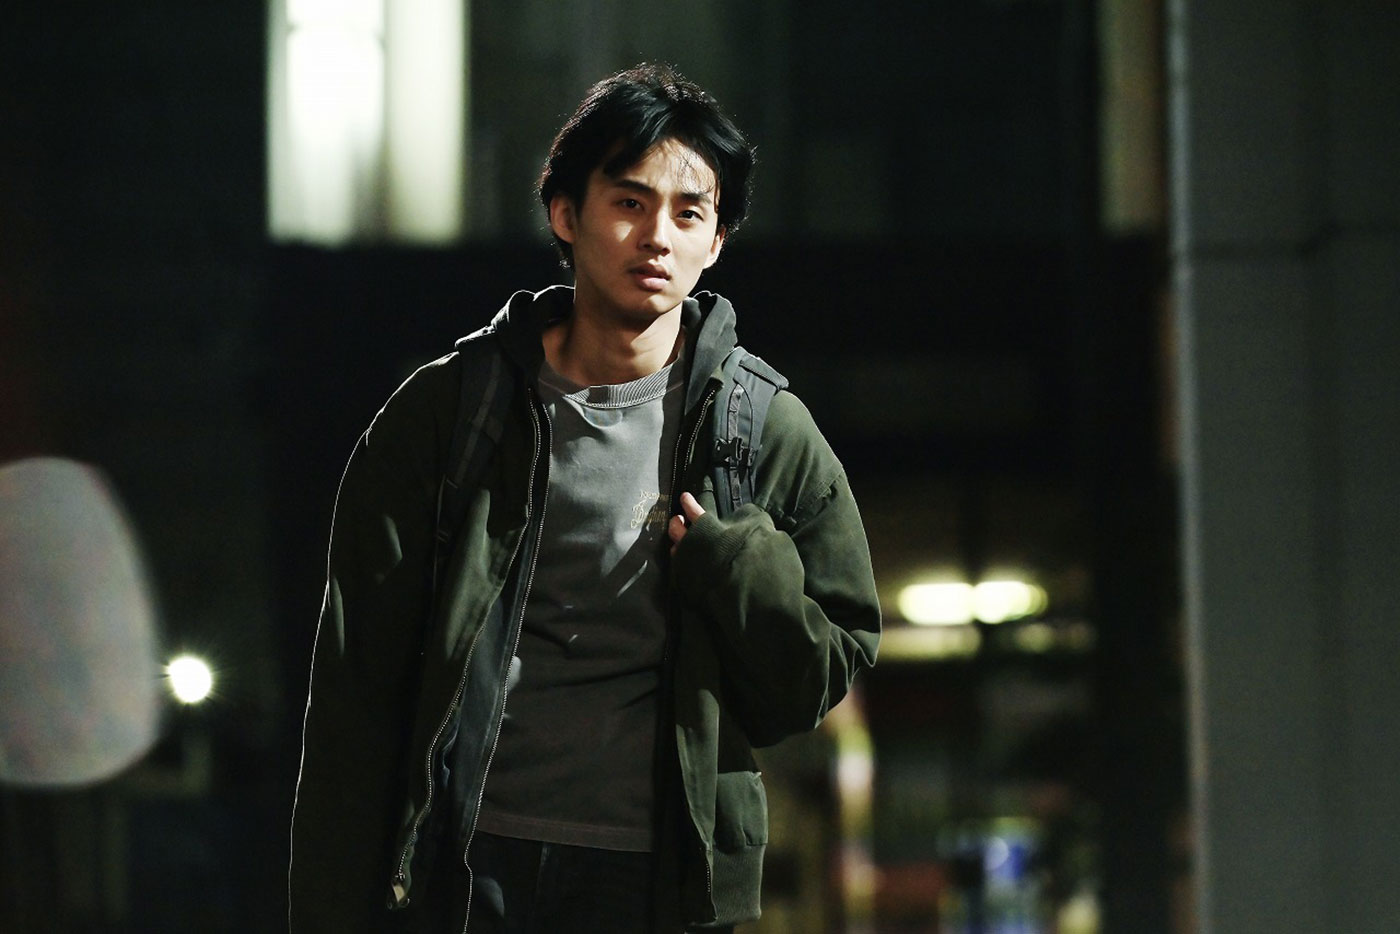 映画『そして僕は途方に暮れる』、Kis-My-Ft2・藤ヶ谷太輔が演じる主人公の逃避劇をたどるシーン写真を公開